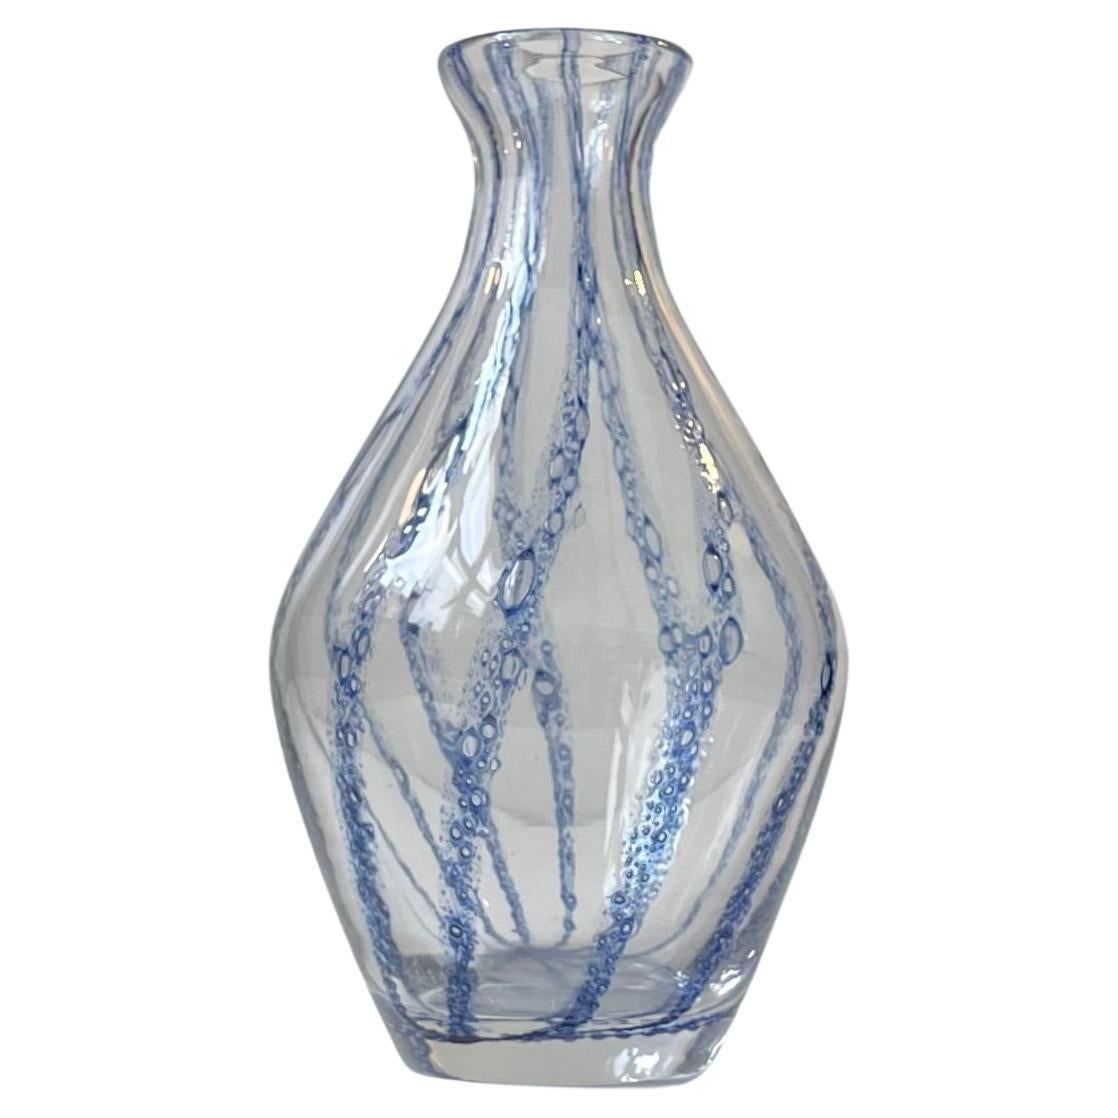 Jarrón de cristal de Murano con rayas azules atribuido a Barovier & Toso